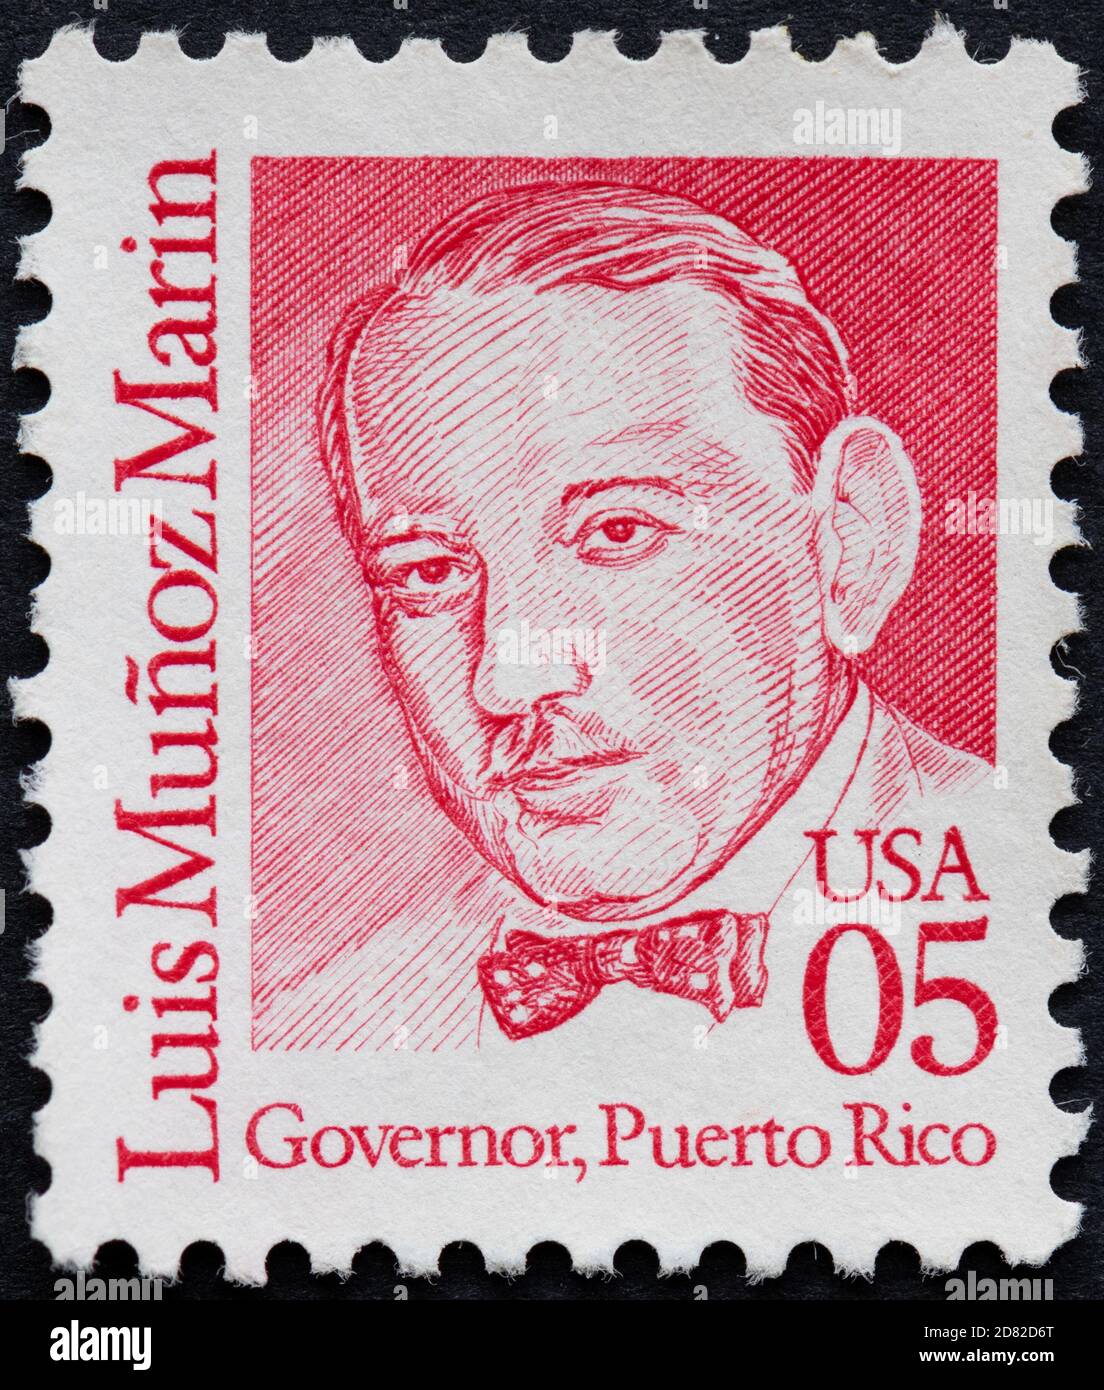 Luis Muñoz Marín - Gobernador, Puerto Rico - EE.UU. Sello postal emitido en  1990 Fotografía de stock - Alamy